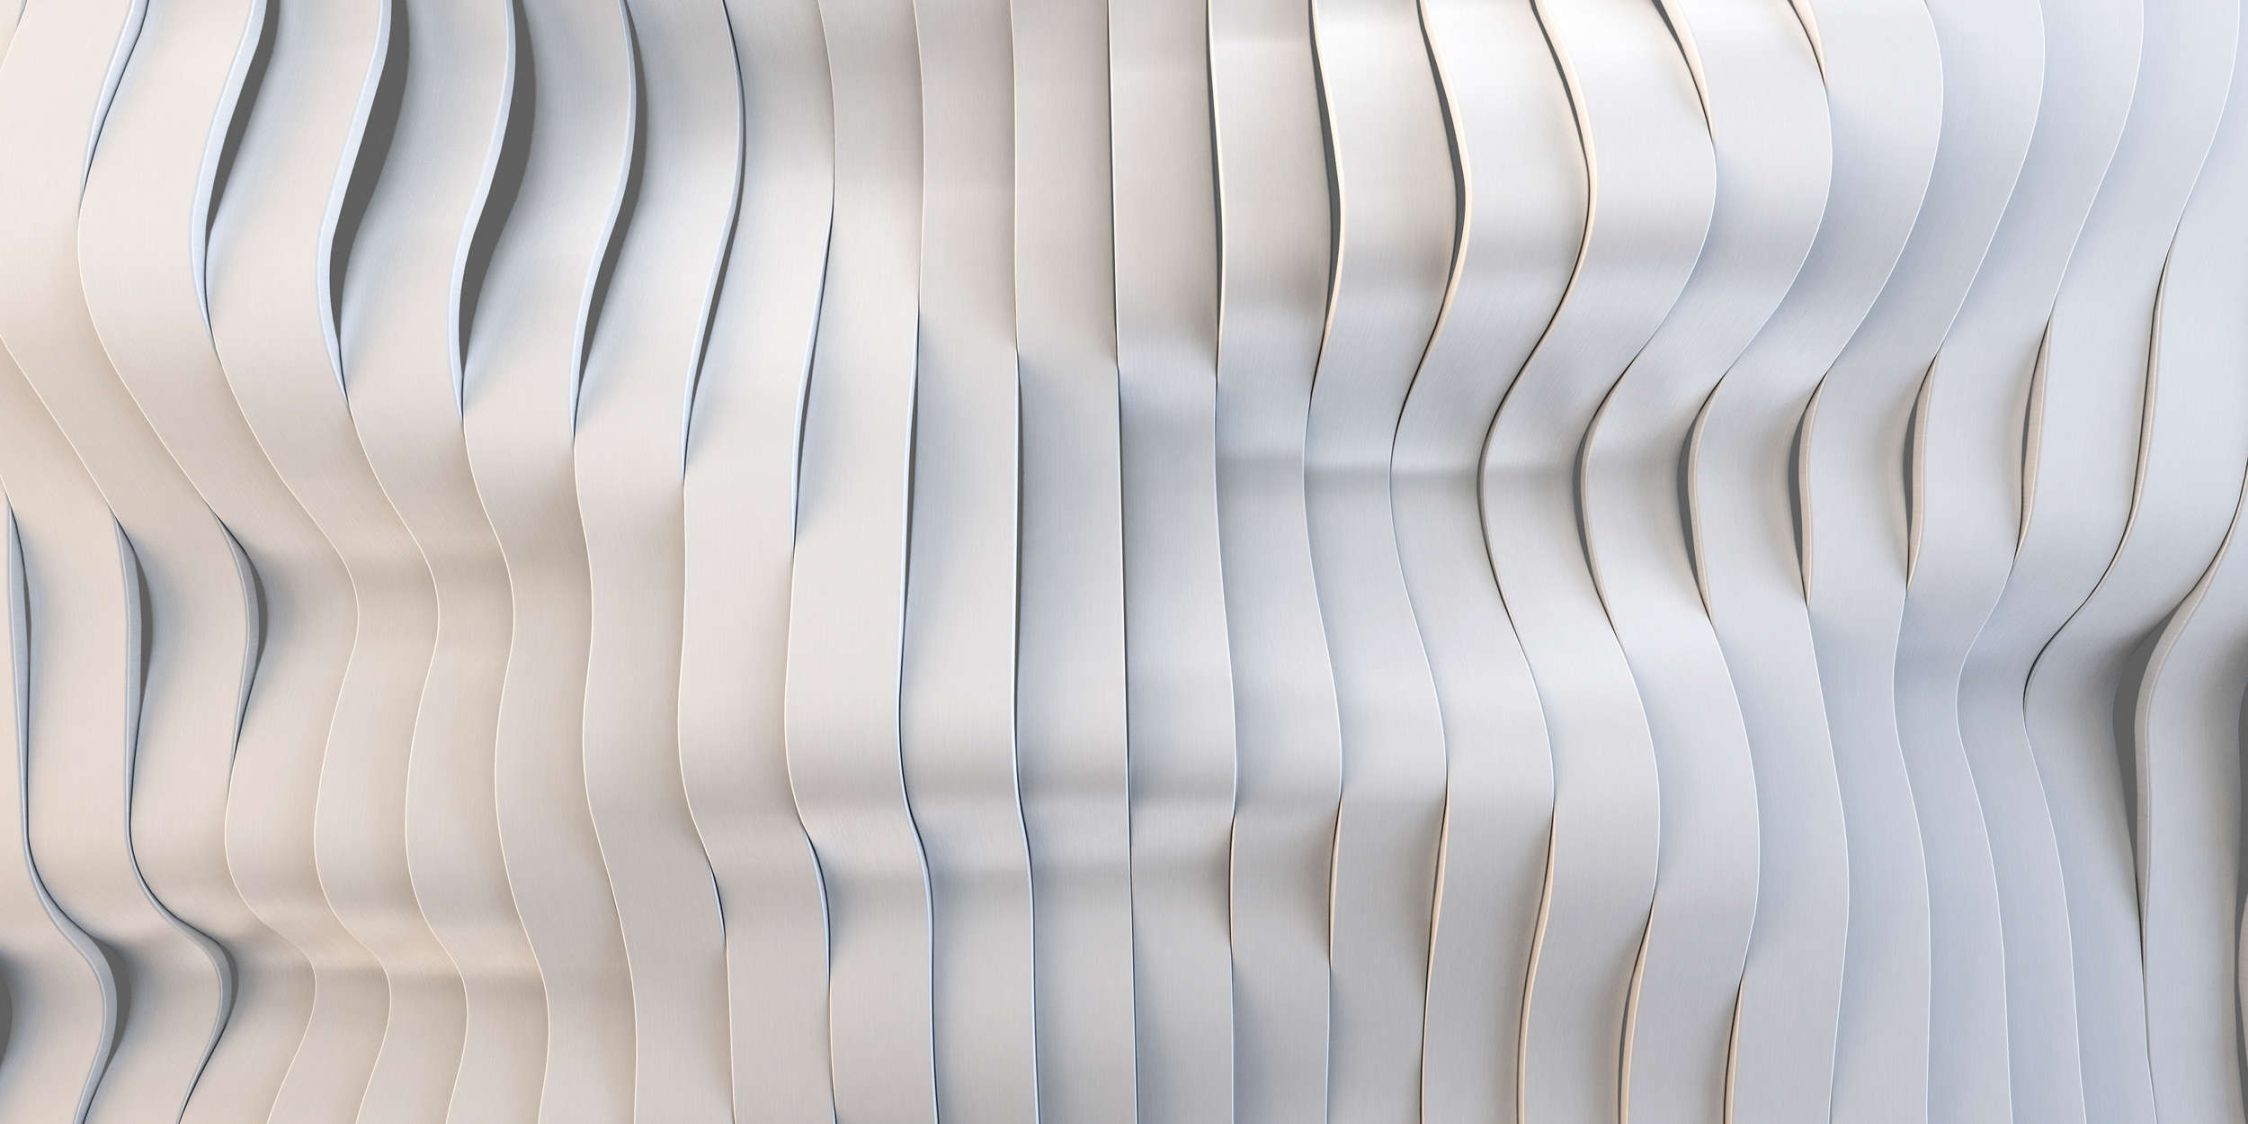             solaris 1 - papier peint en papier au design futuriste de lignes électriques - intissé lisse aux reflets légèrement nacrés
        